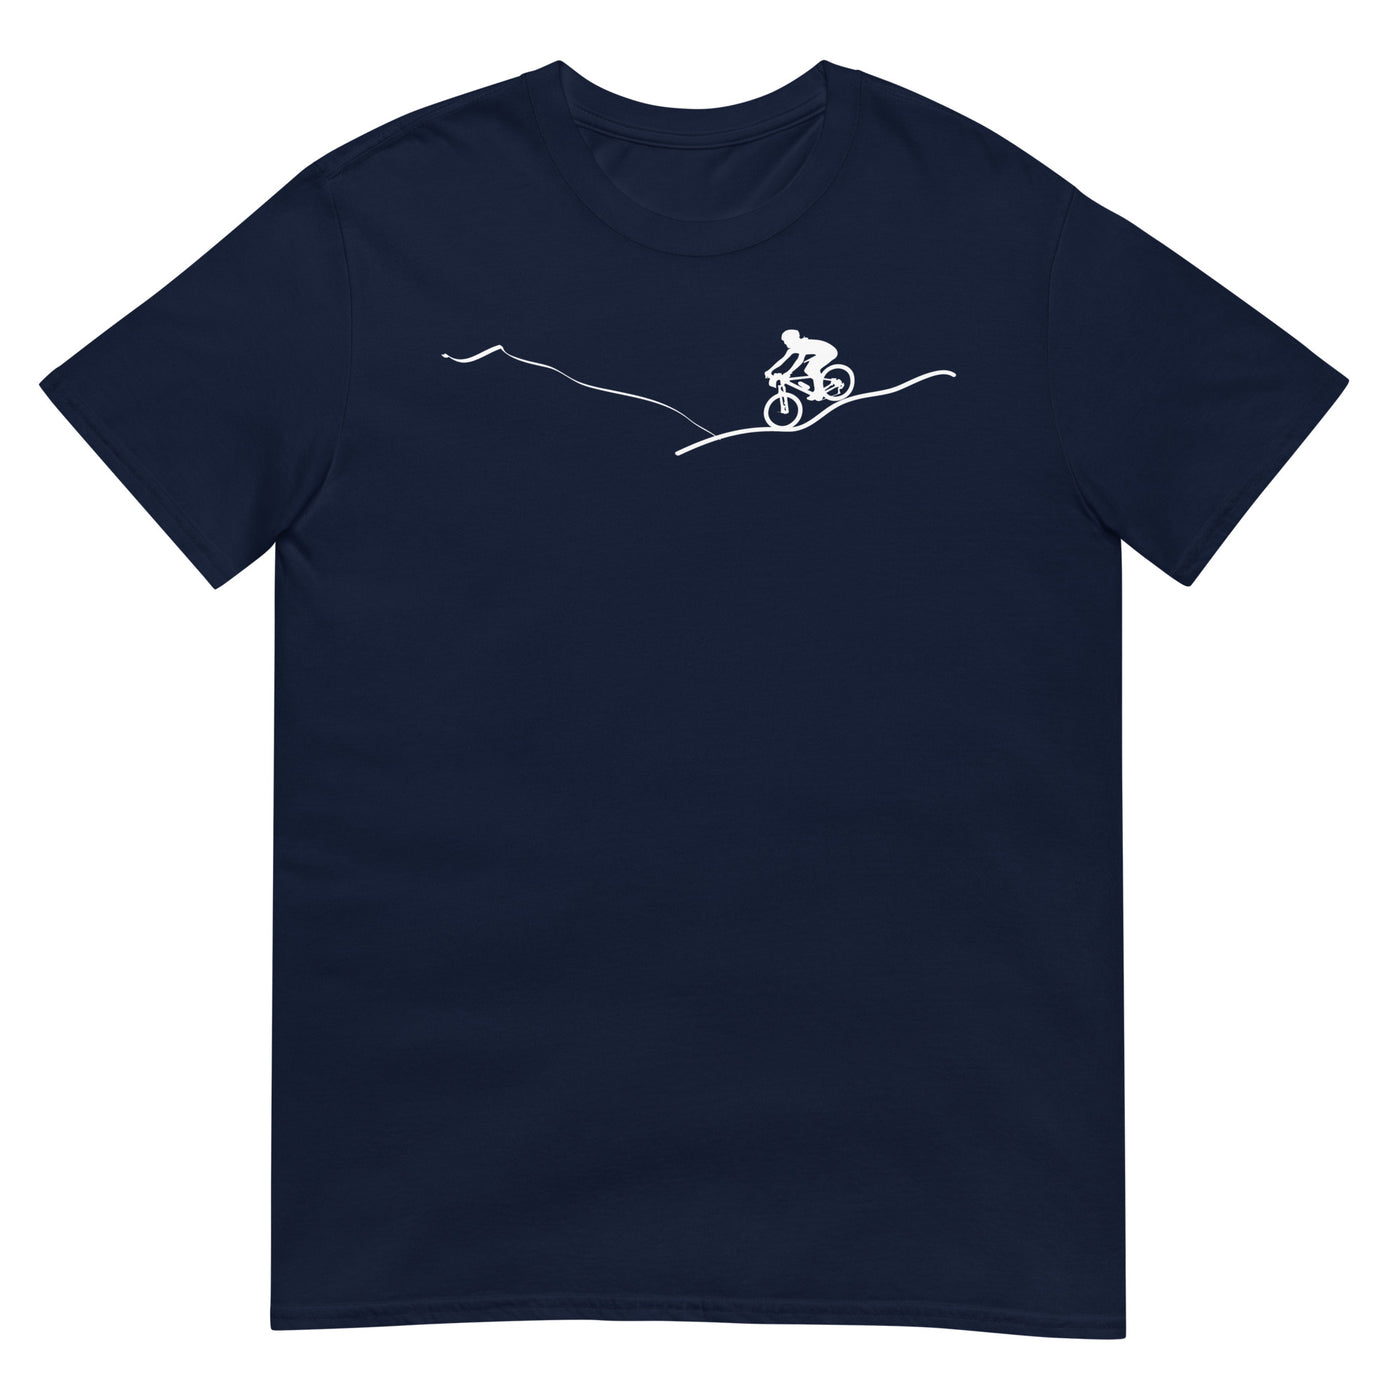 Berge - Radfahren - (15) - T-Shirt (Unisex) fahrrad xxx yyy zzz Navy